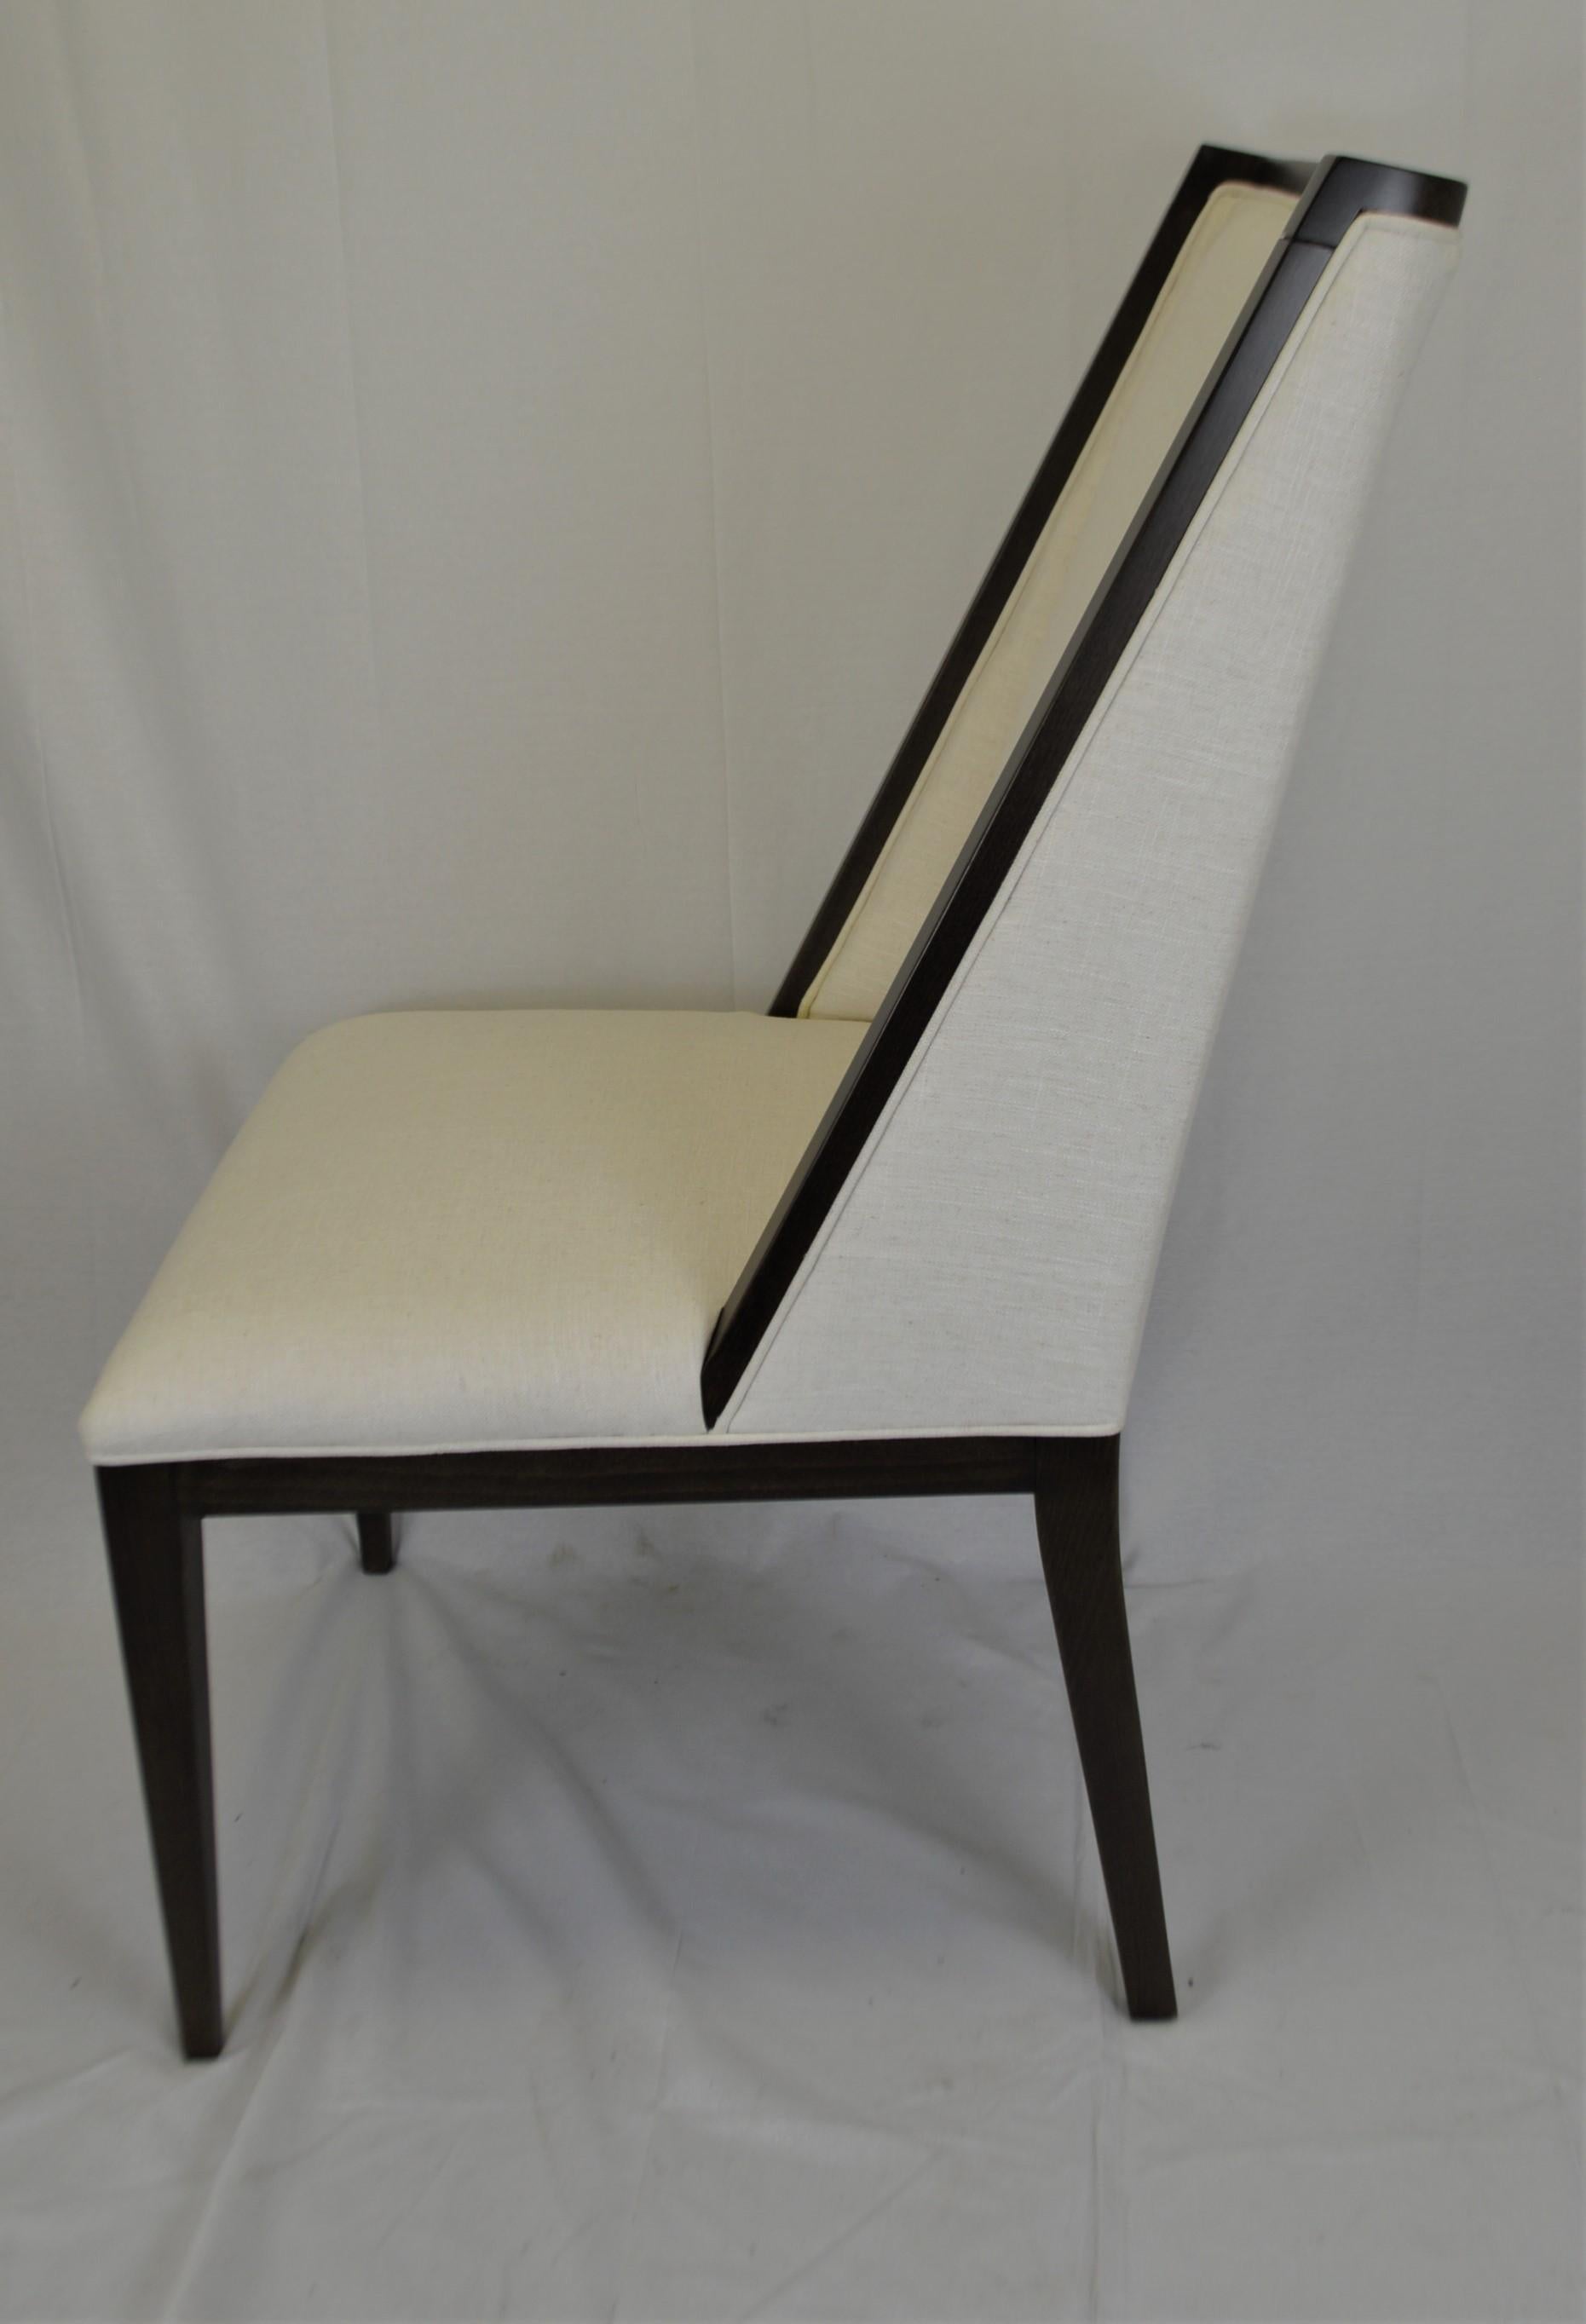 Dieser moderne Stuhl ist attraktiv und großzügig bemessen. Der Rahmen wird in Italien hergestellt und kann individuell gestaltet werden, hier ist er in schwarzer Farbe zu sehen.
Wir bieten maßgeschneiderte Polsterung mit Ihrem Stoff.